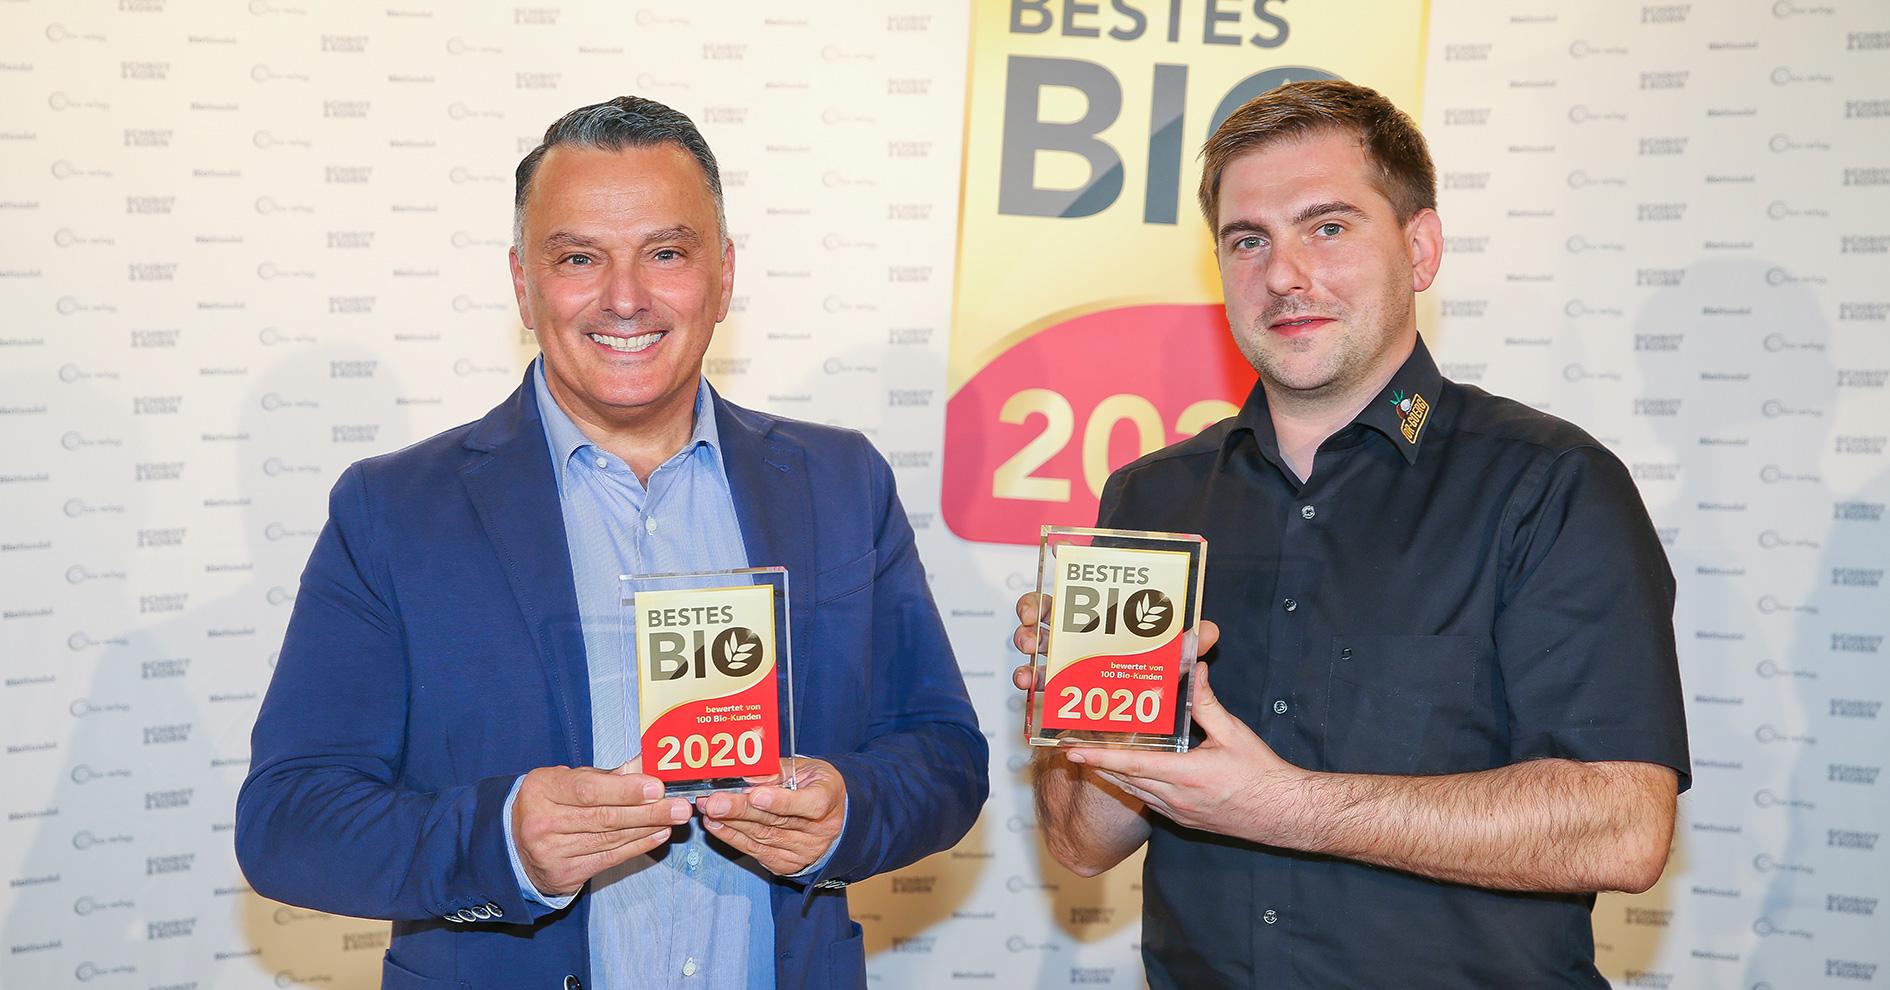 Dr. Goerg gewinnt gleich zweimal die Auszeichnung Bestes Bio 2020